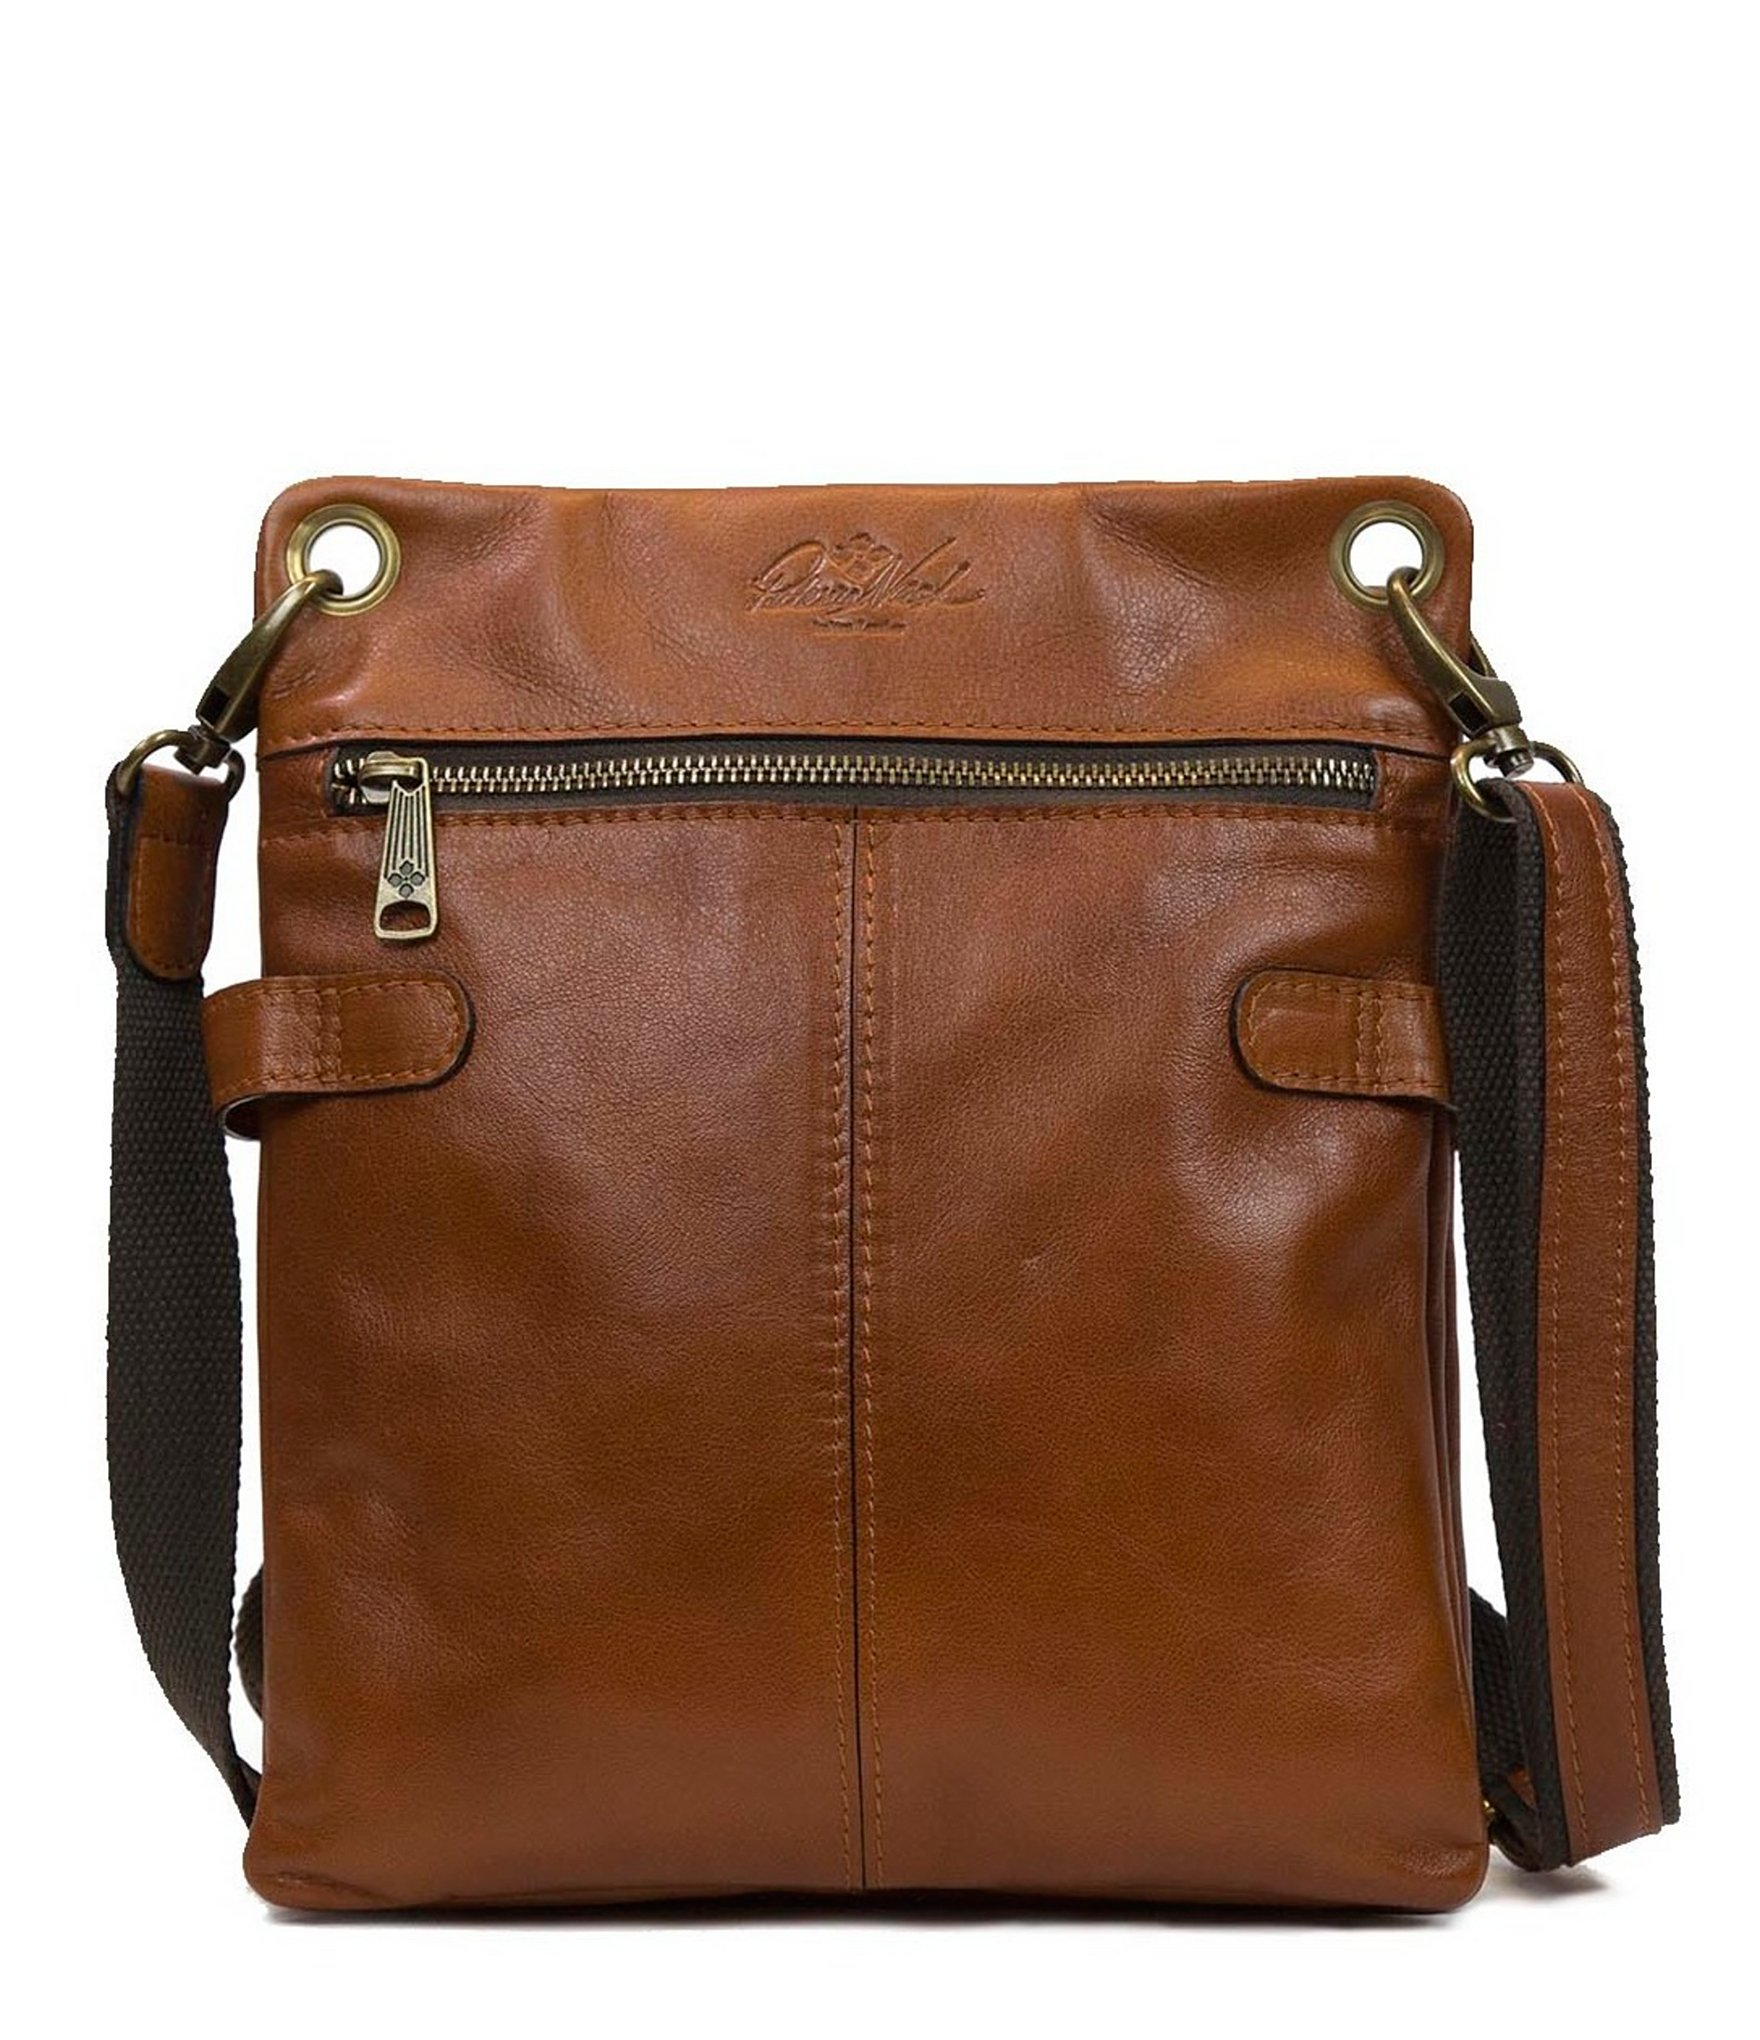 Soft Leather Cross Body Bags Australia | NAR Media Kit